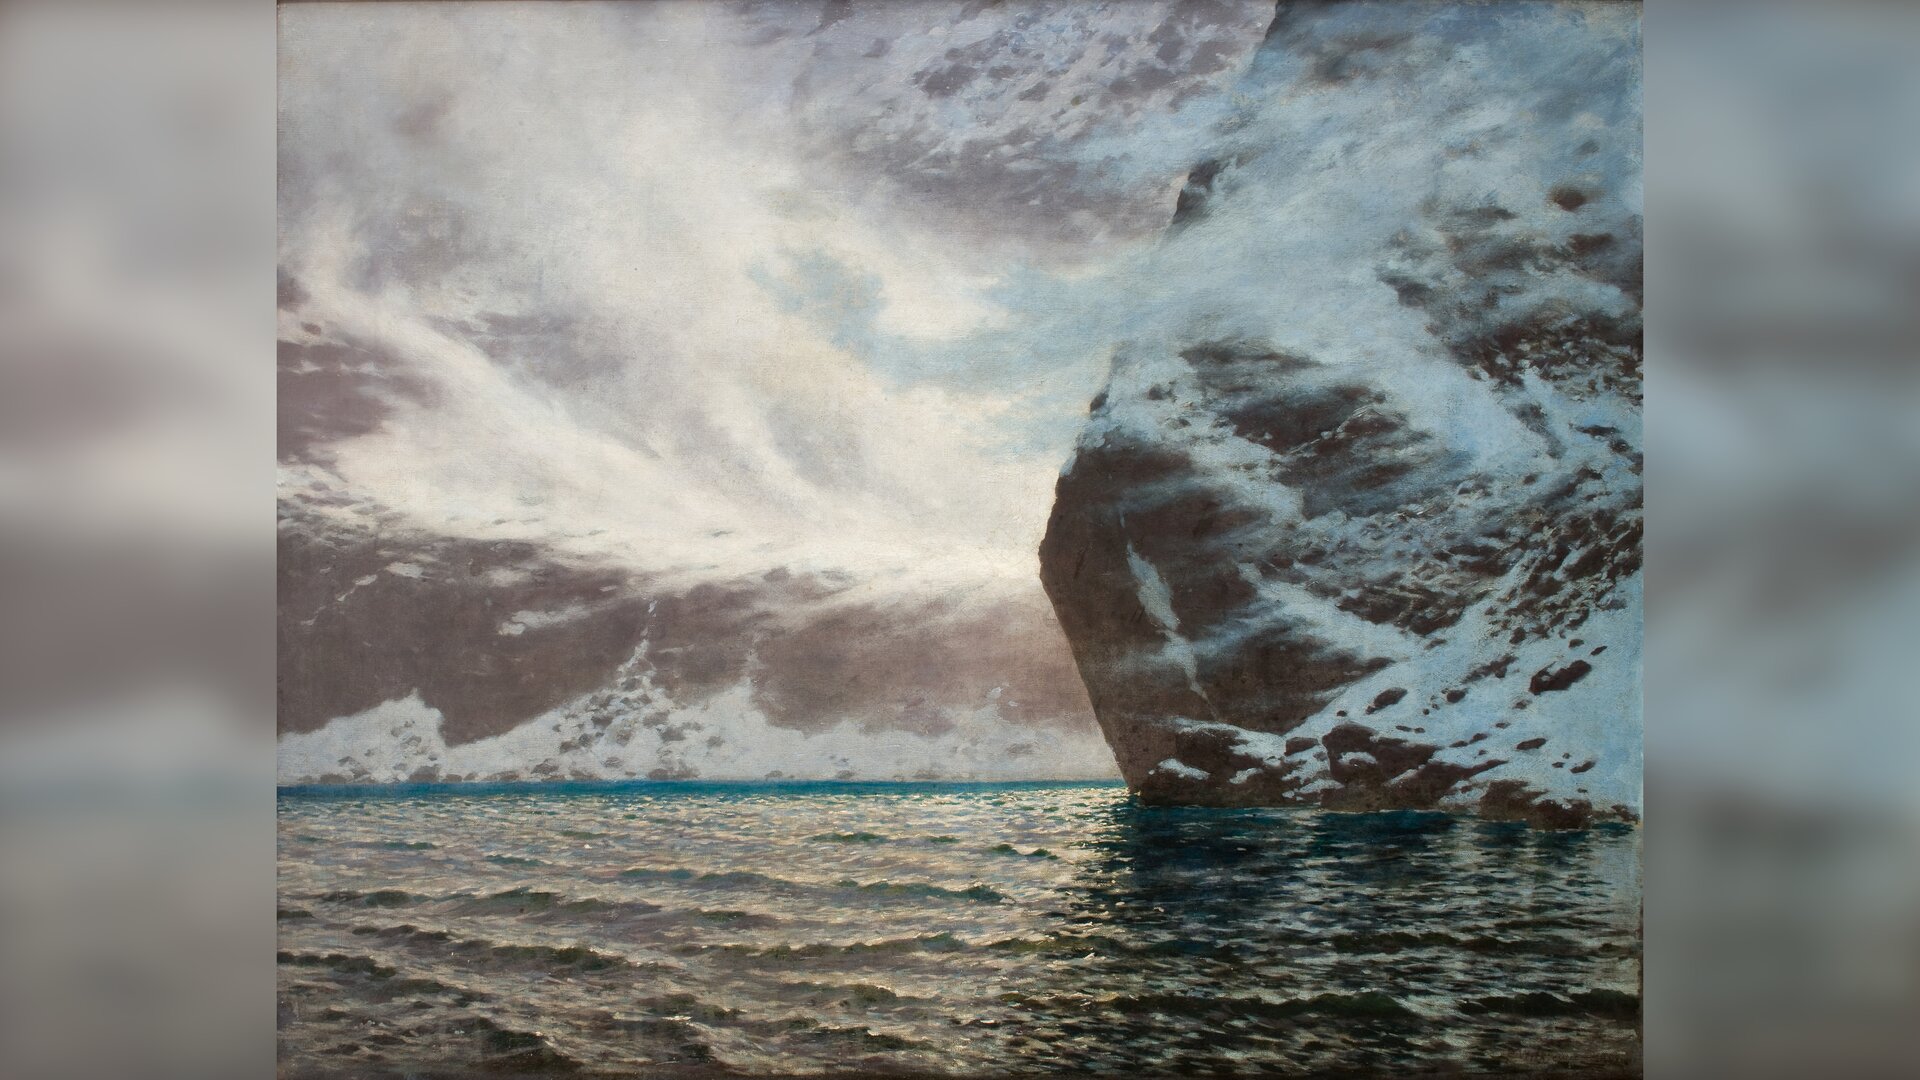 Ilustracja przedstawia górski pejzaż. Na pierwszym planie ukazana jest tafla lekko falującej wody. Po prawej stronie wyrasta z wody wysoka, ośnieżona skała. W tle zachmurzone niebo.